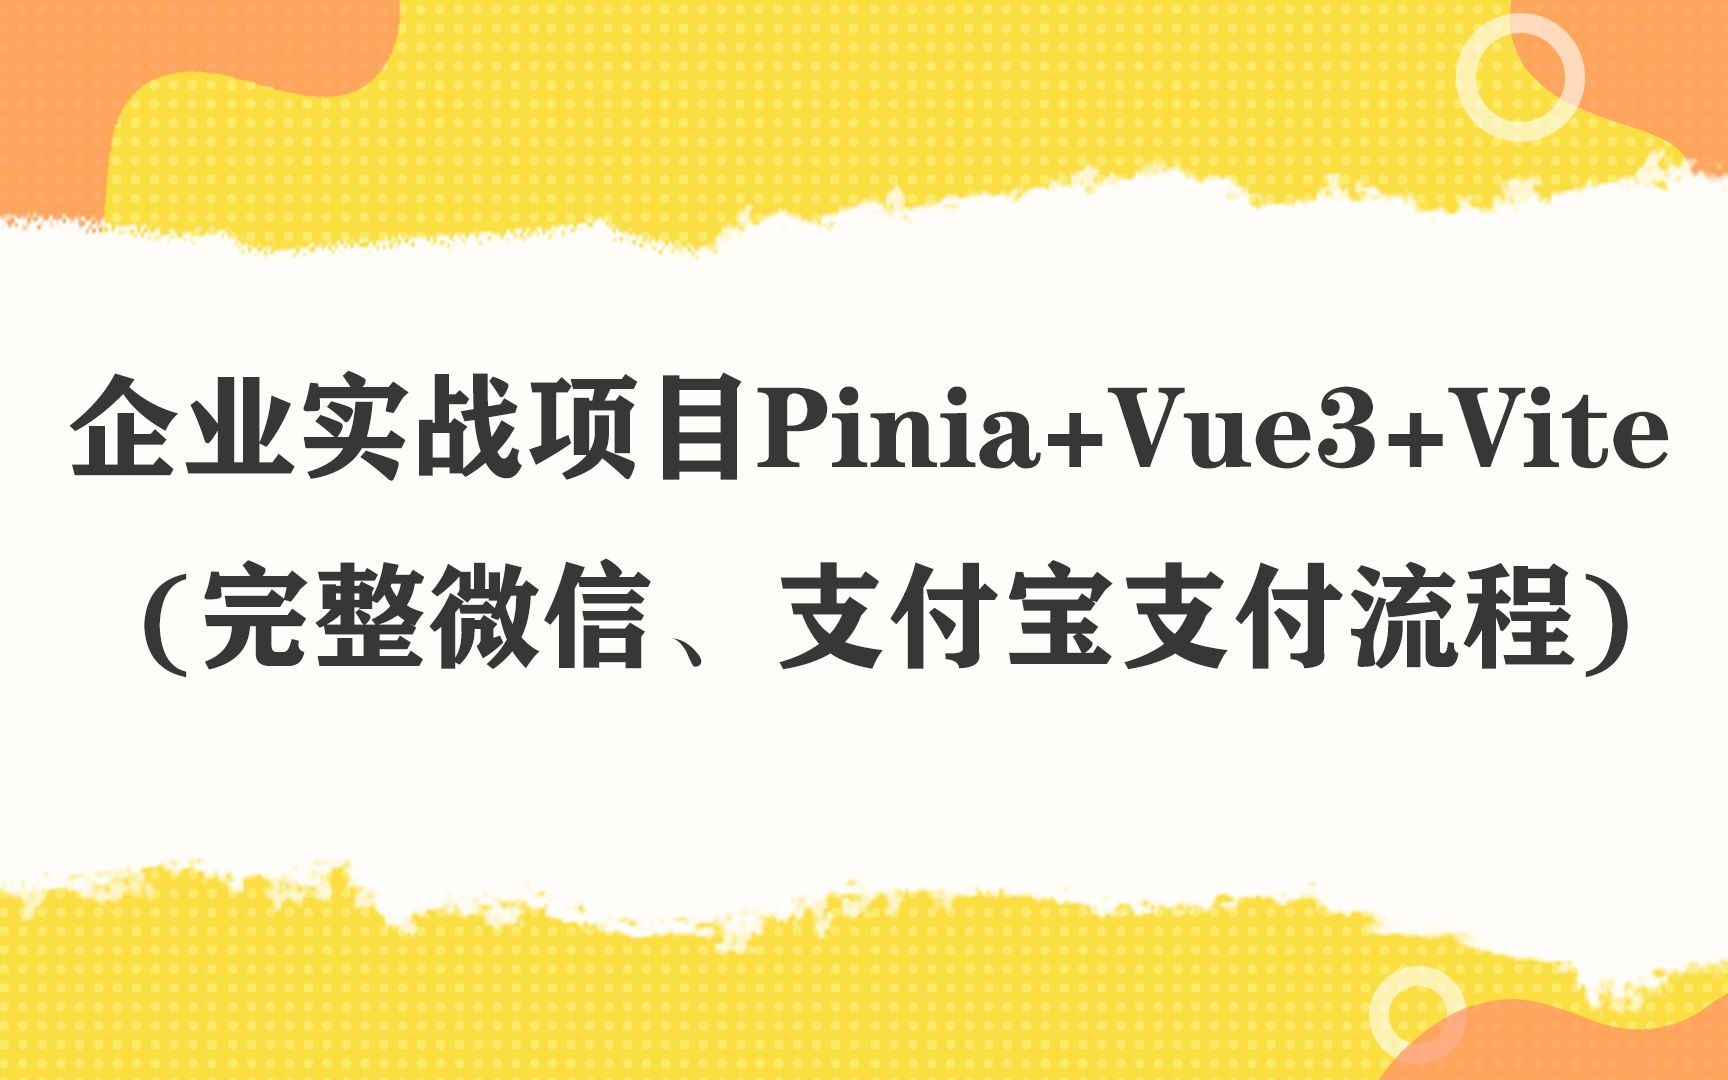 企业实战项目Pinia+Vue3+Vite (完整微信、支付宝支付流程)